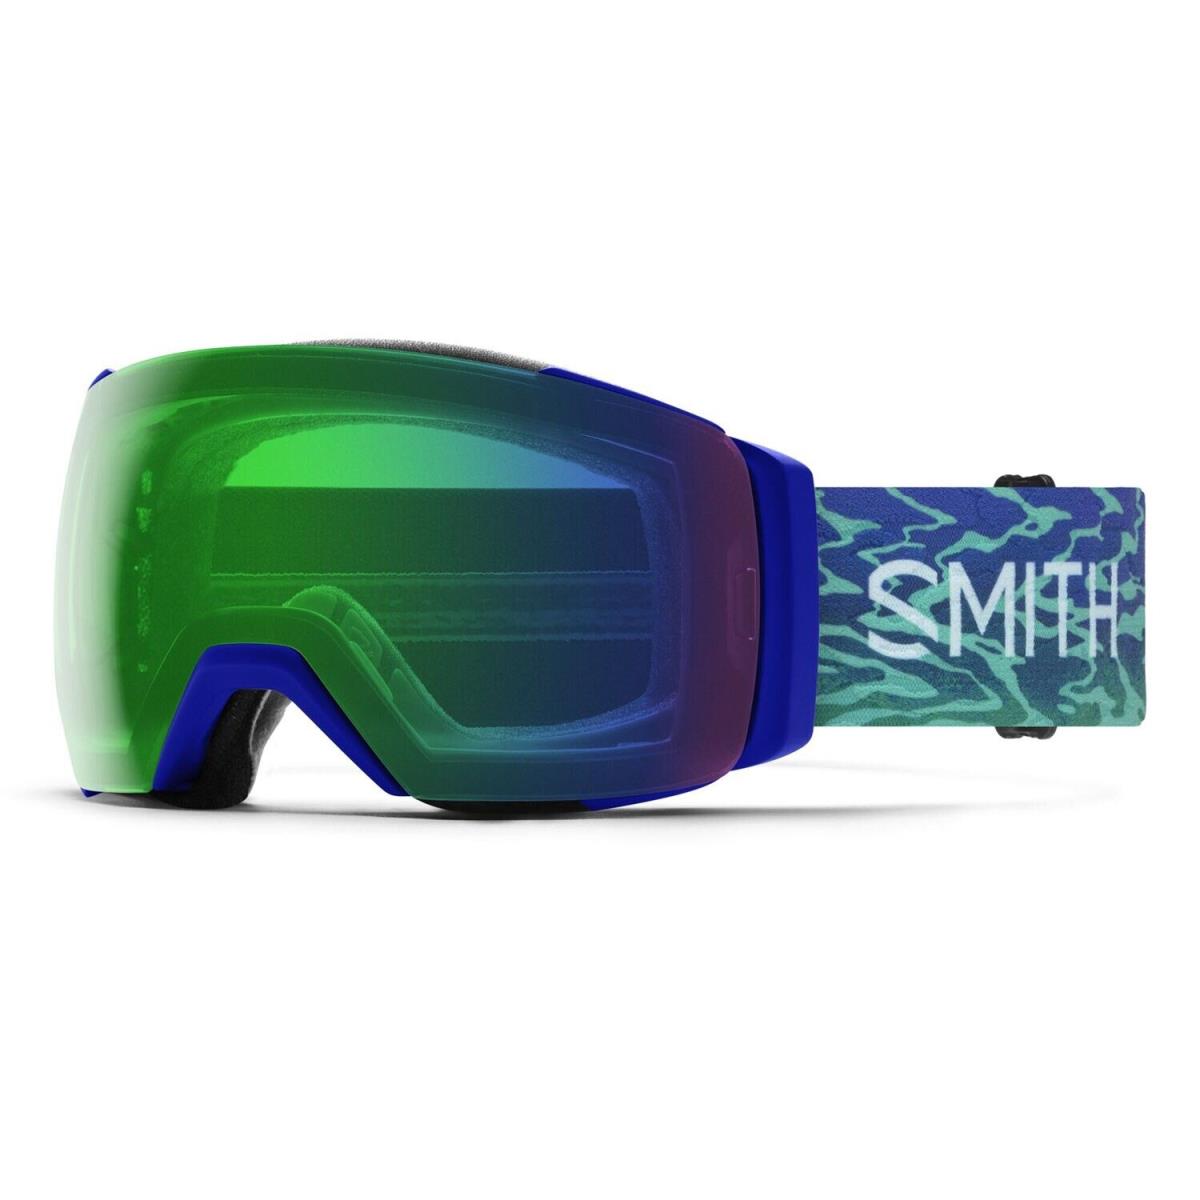 Smith I/o Mag XL Snow Goggles Lapis Brain Waves Everyday Green Mirror + Bonus